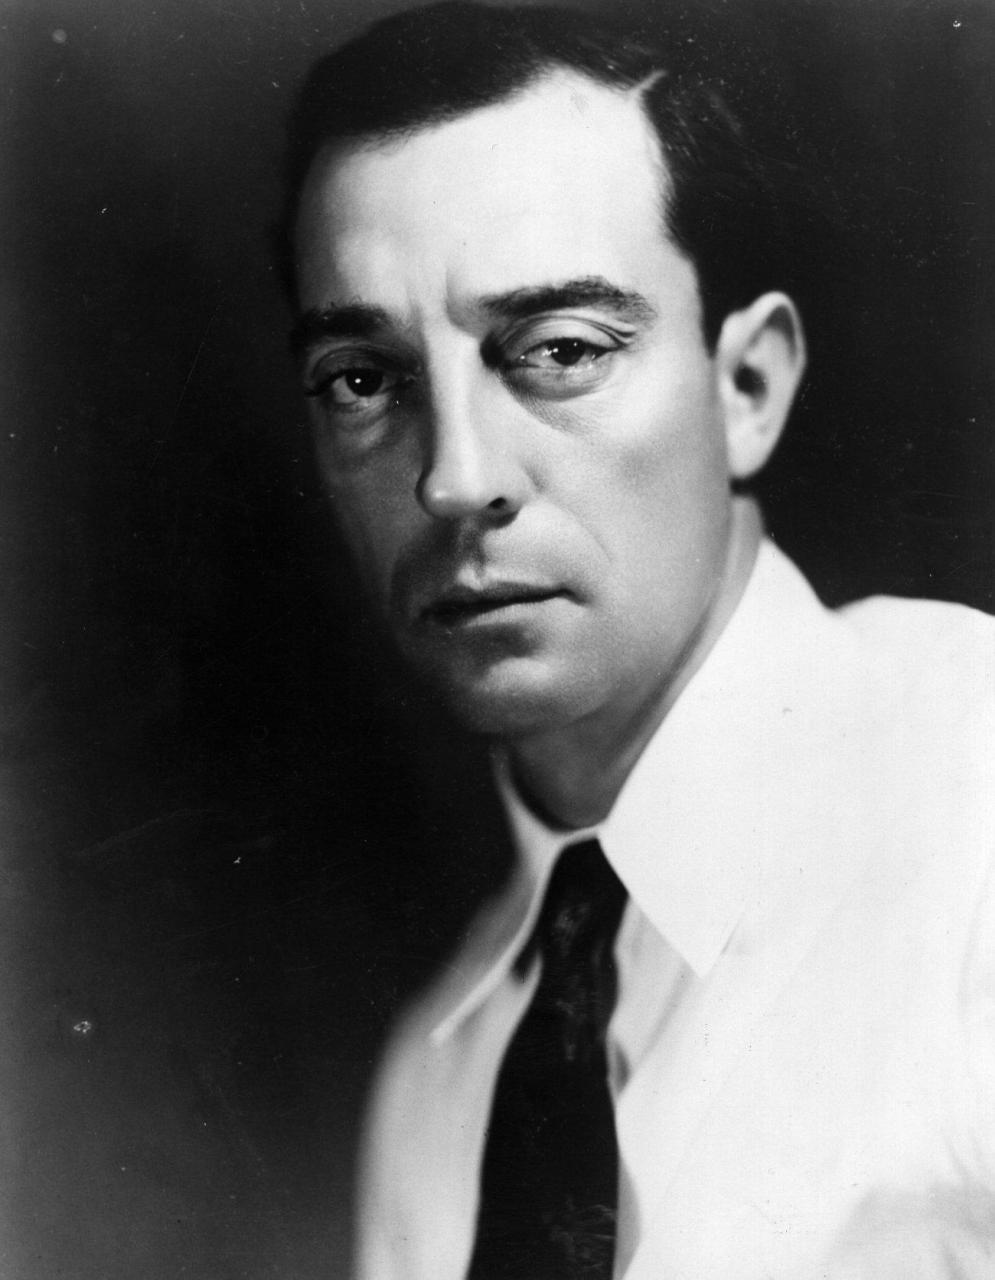 Бастер Китон - фильмы с актером, биография, сколько лет - Buster Keaton